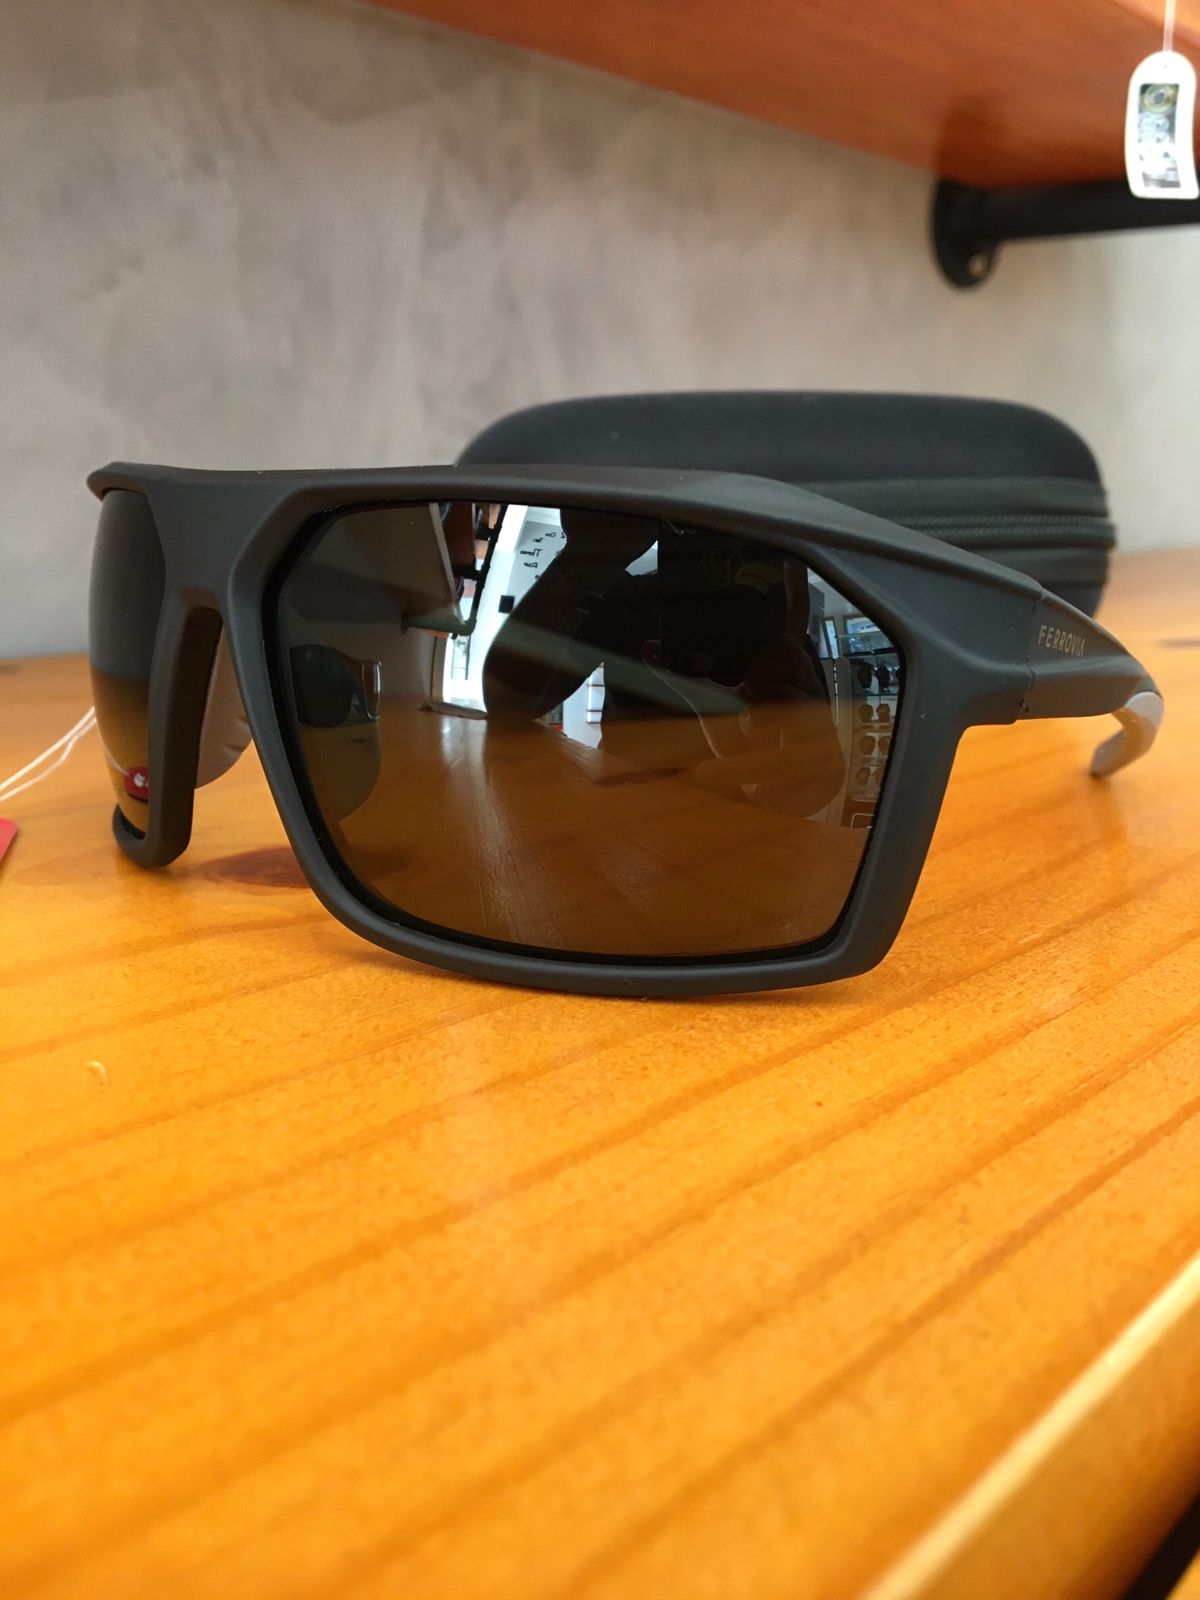 Óculos de Sol Ferrovia Masculino Preto Fosco Lupa Esportivo com Lente Verde Flexível Polarizado FR7001 C2